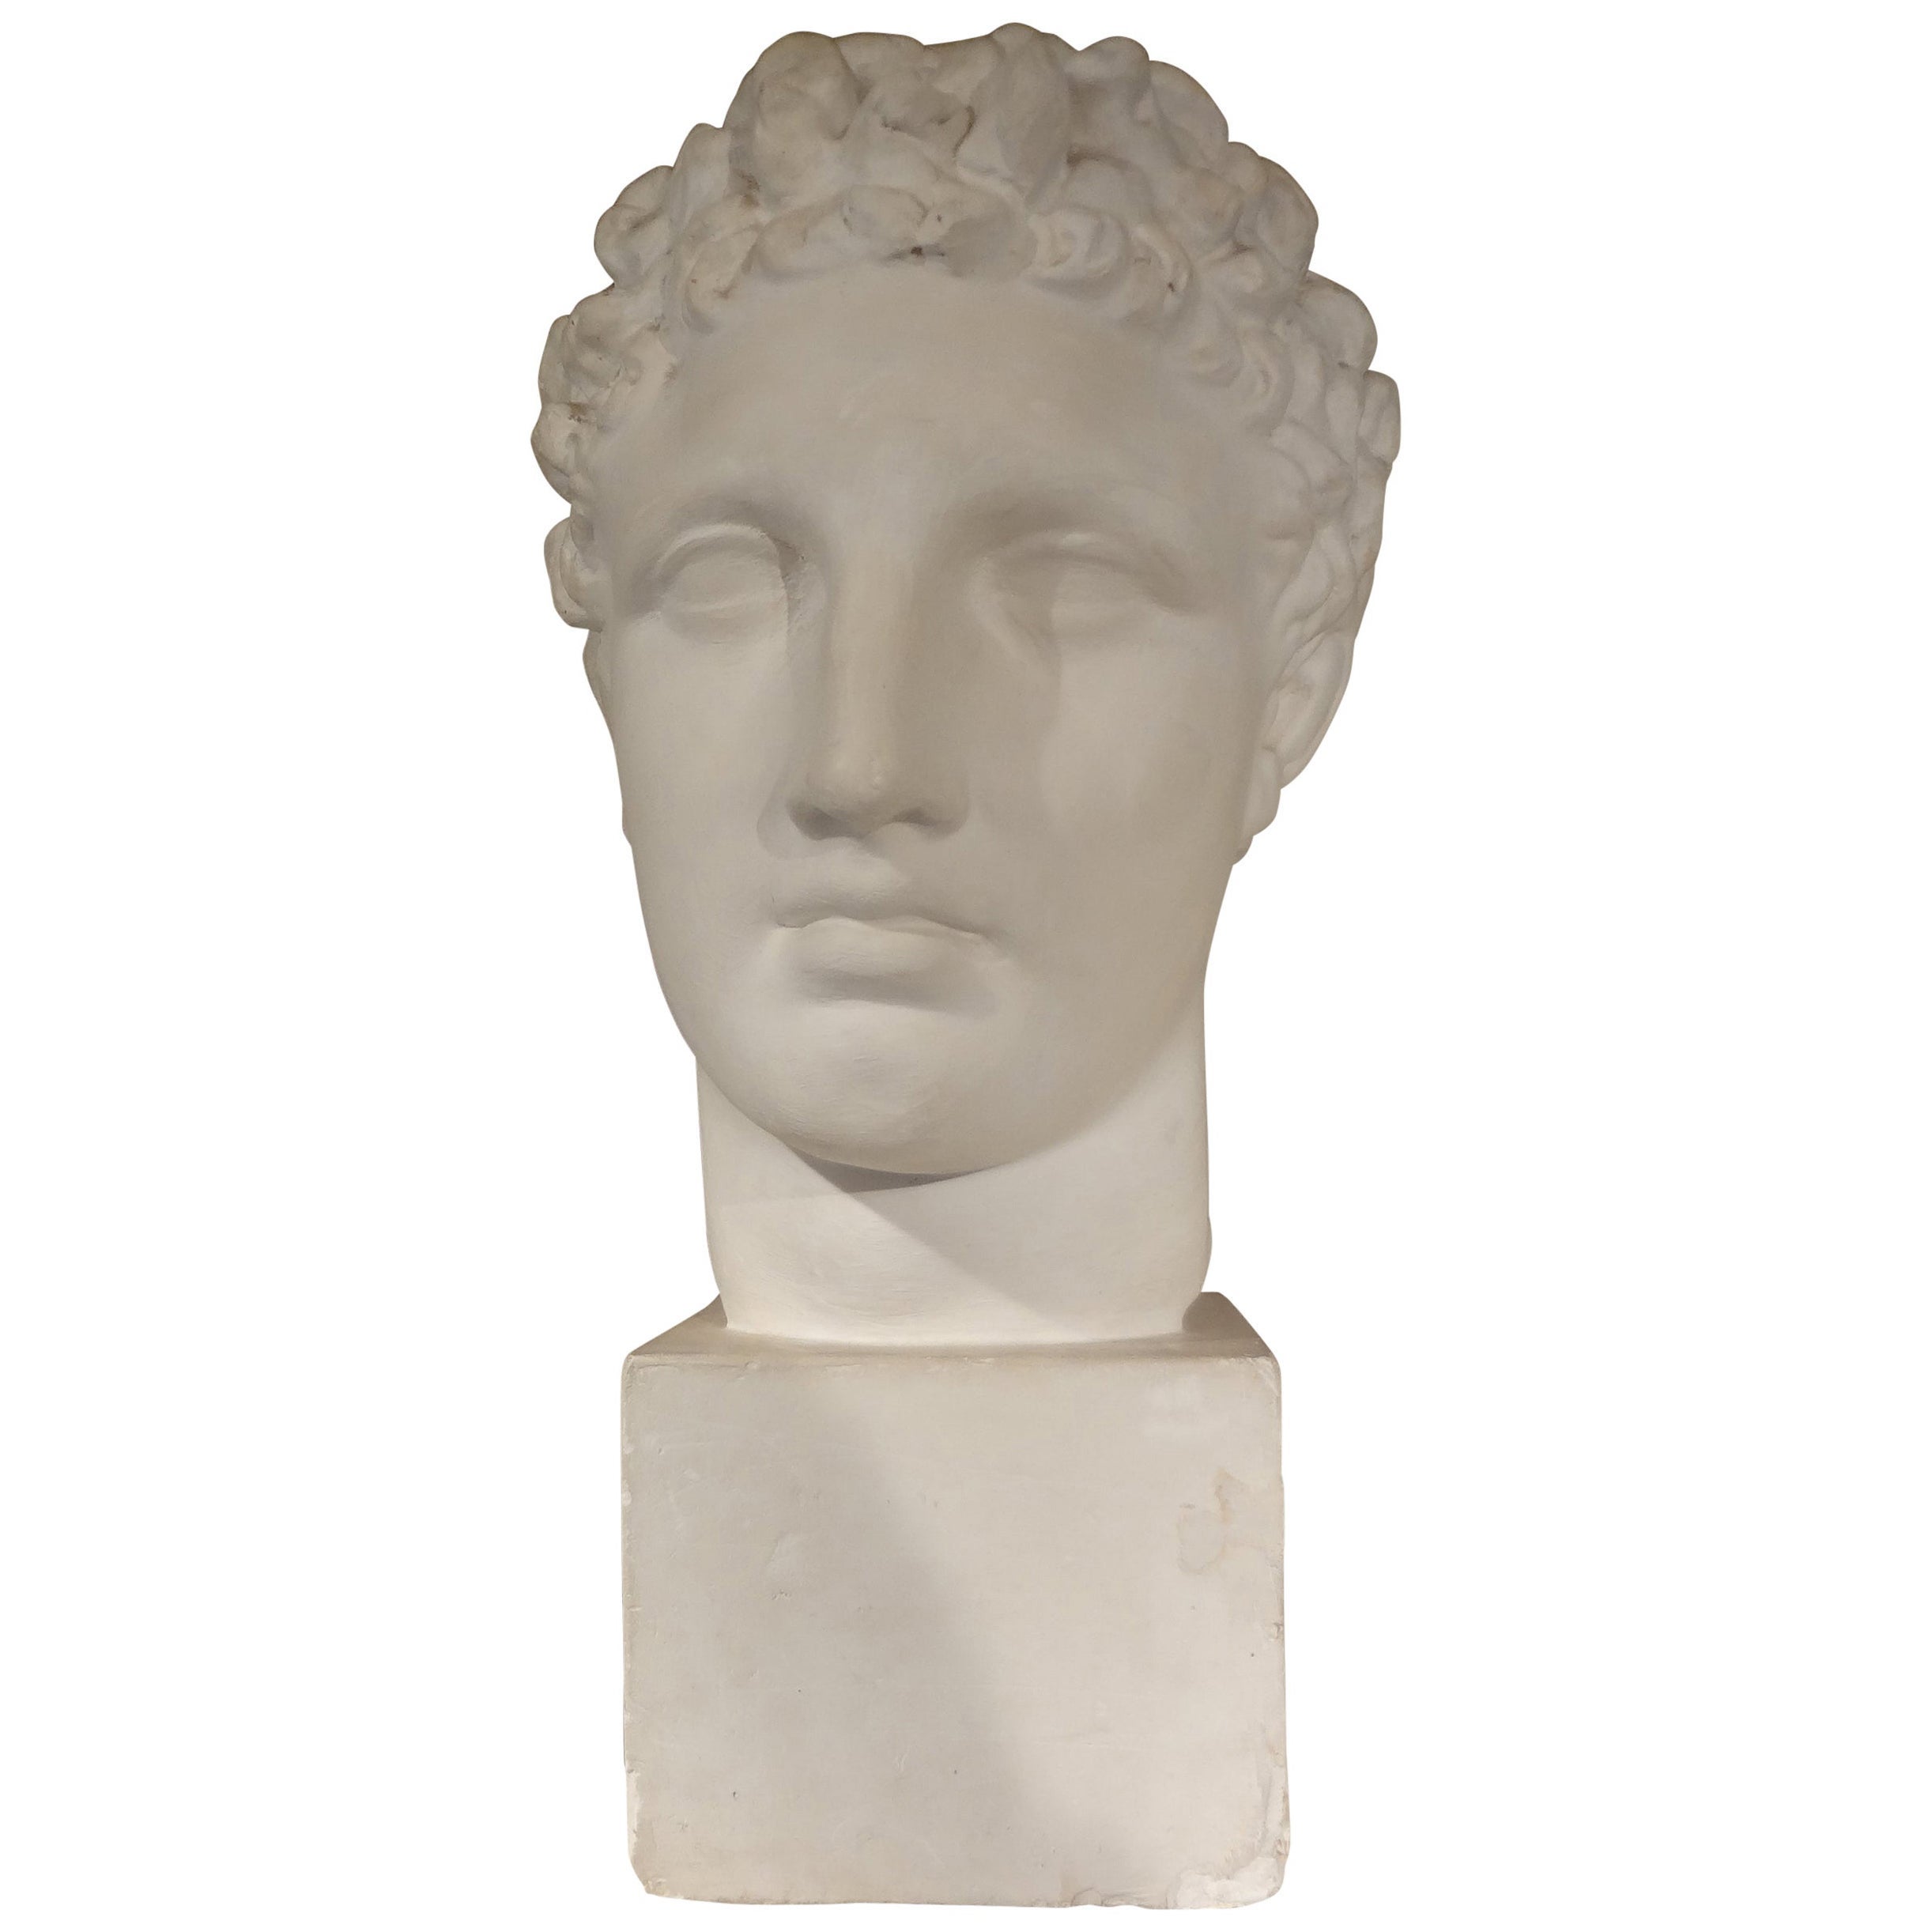 Buste en plâtre français d'un homme romain classique